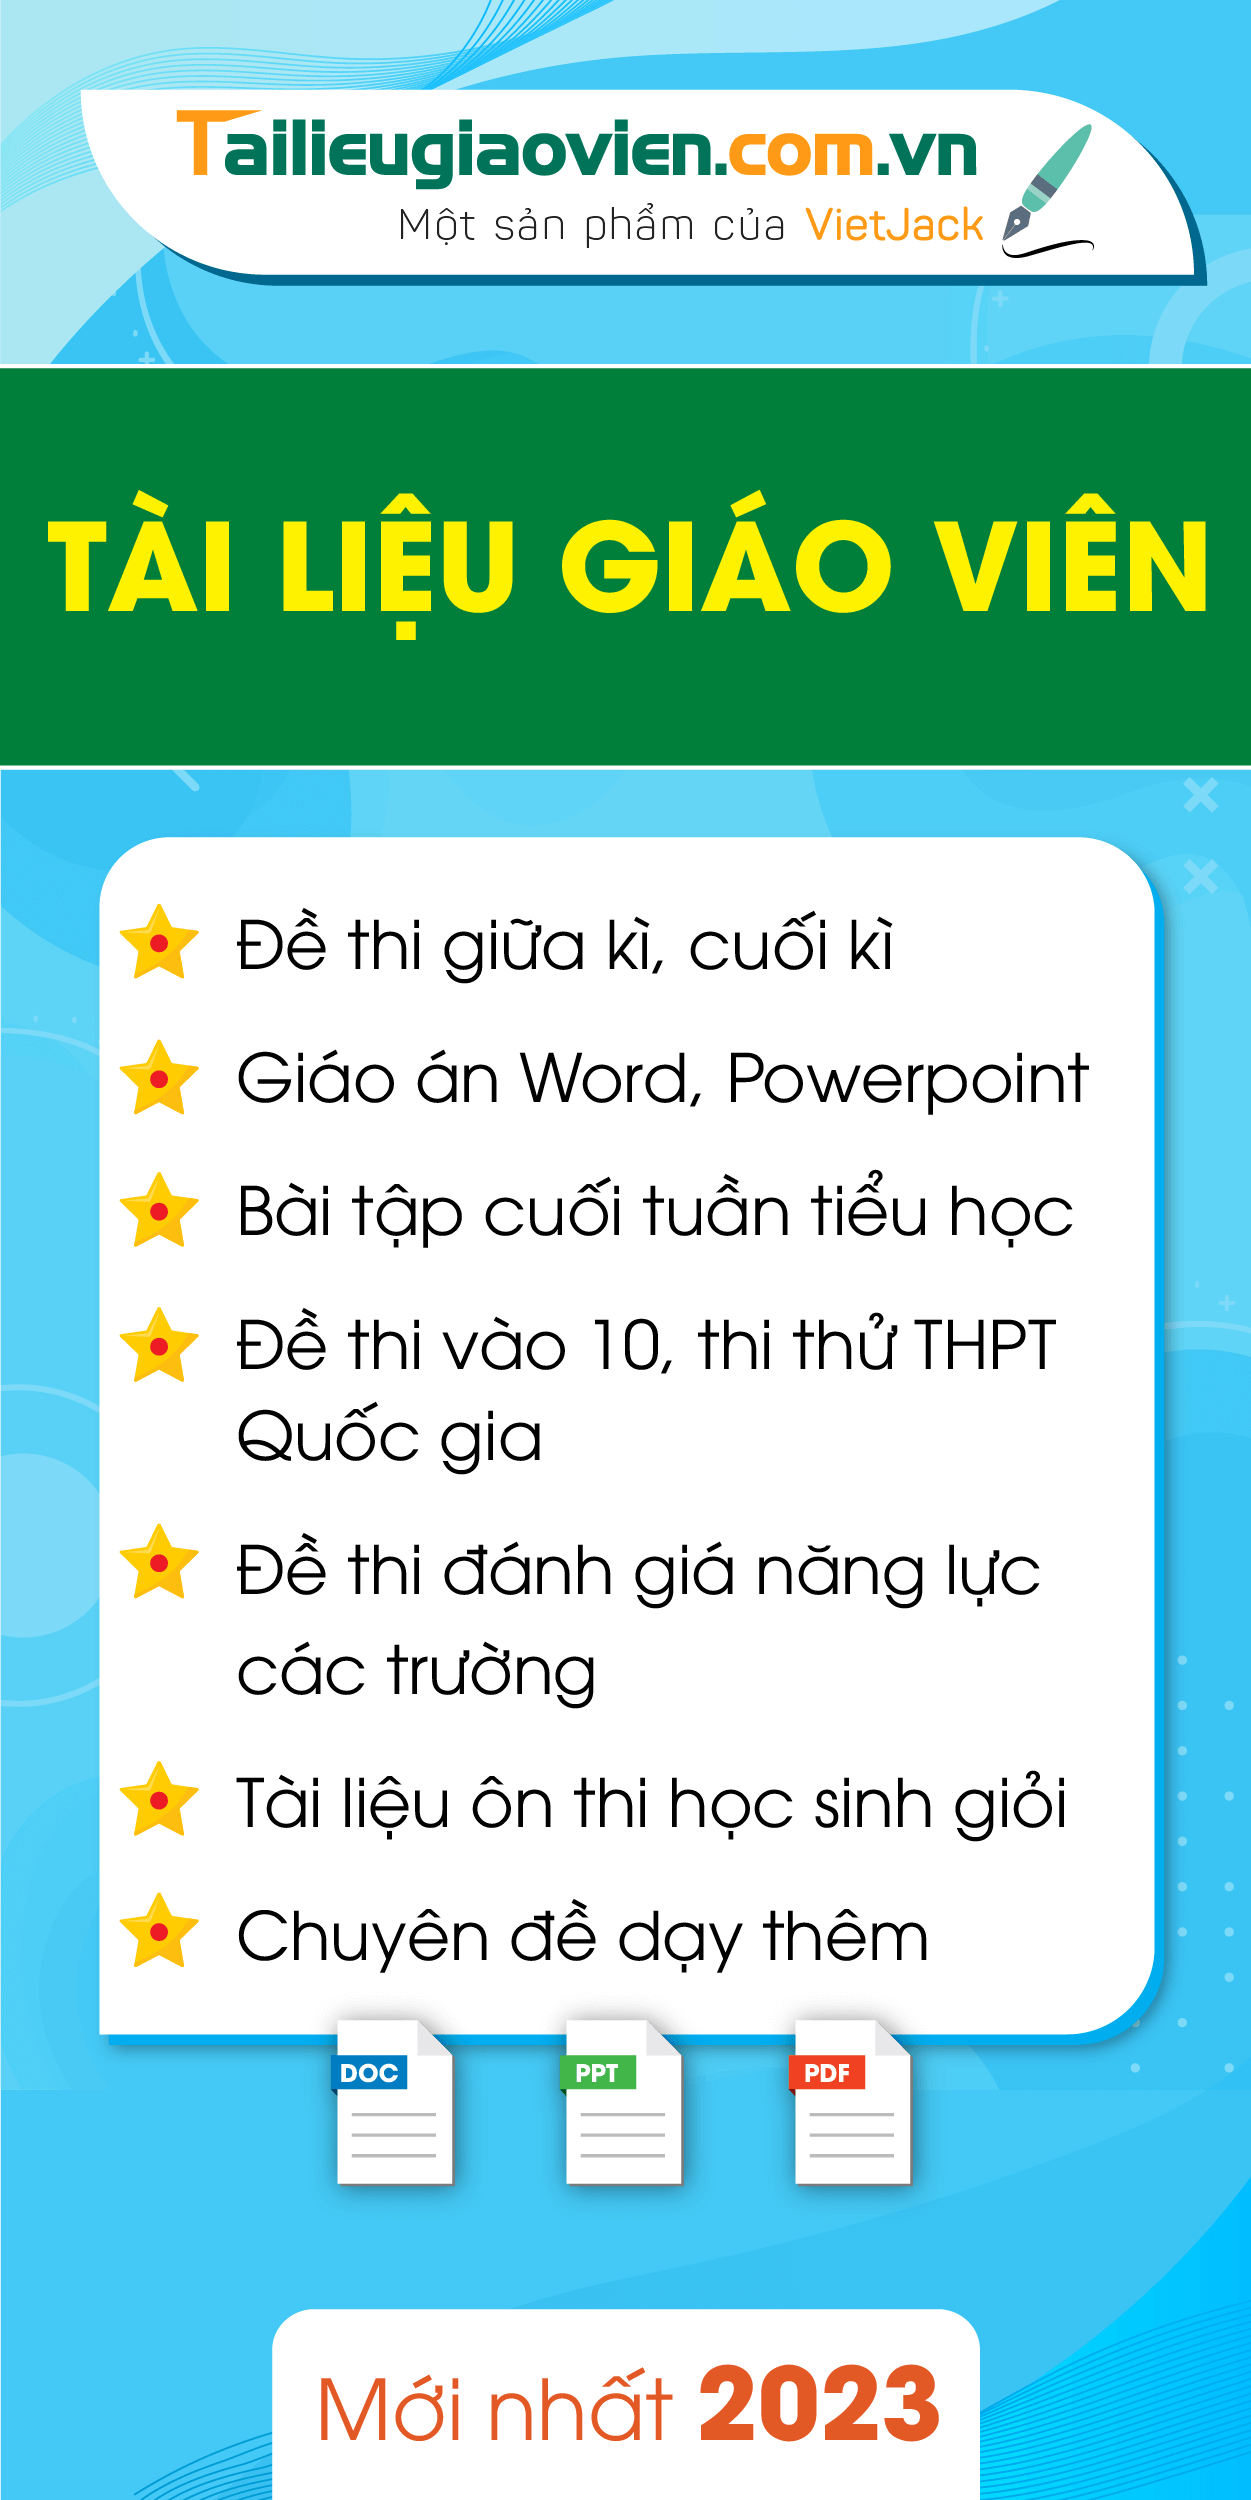 tailieugiaovien.com.vn